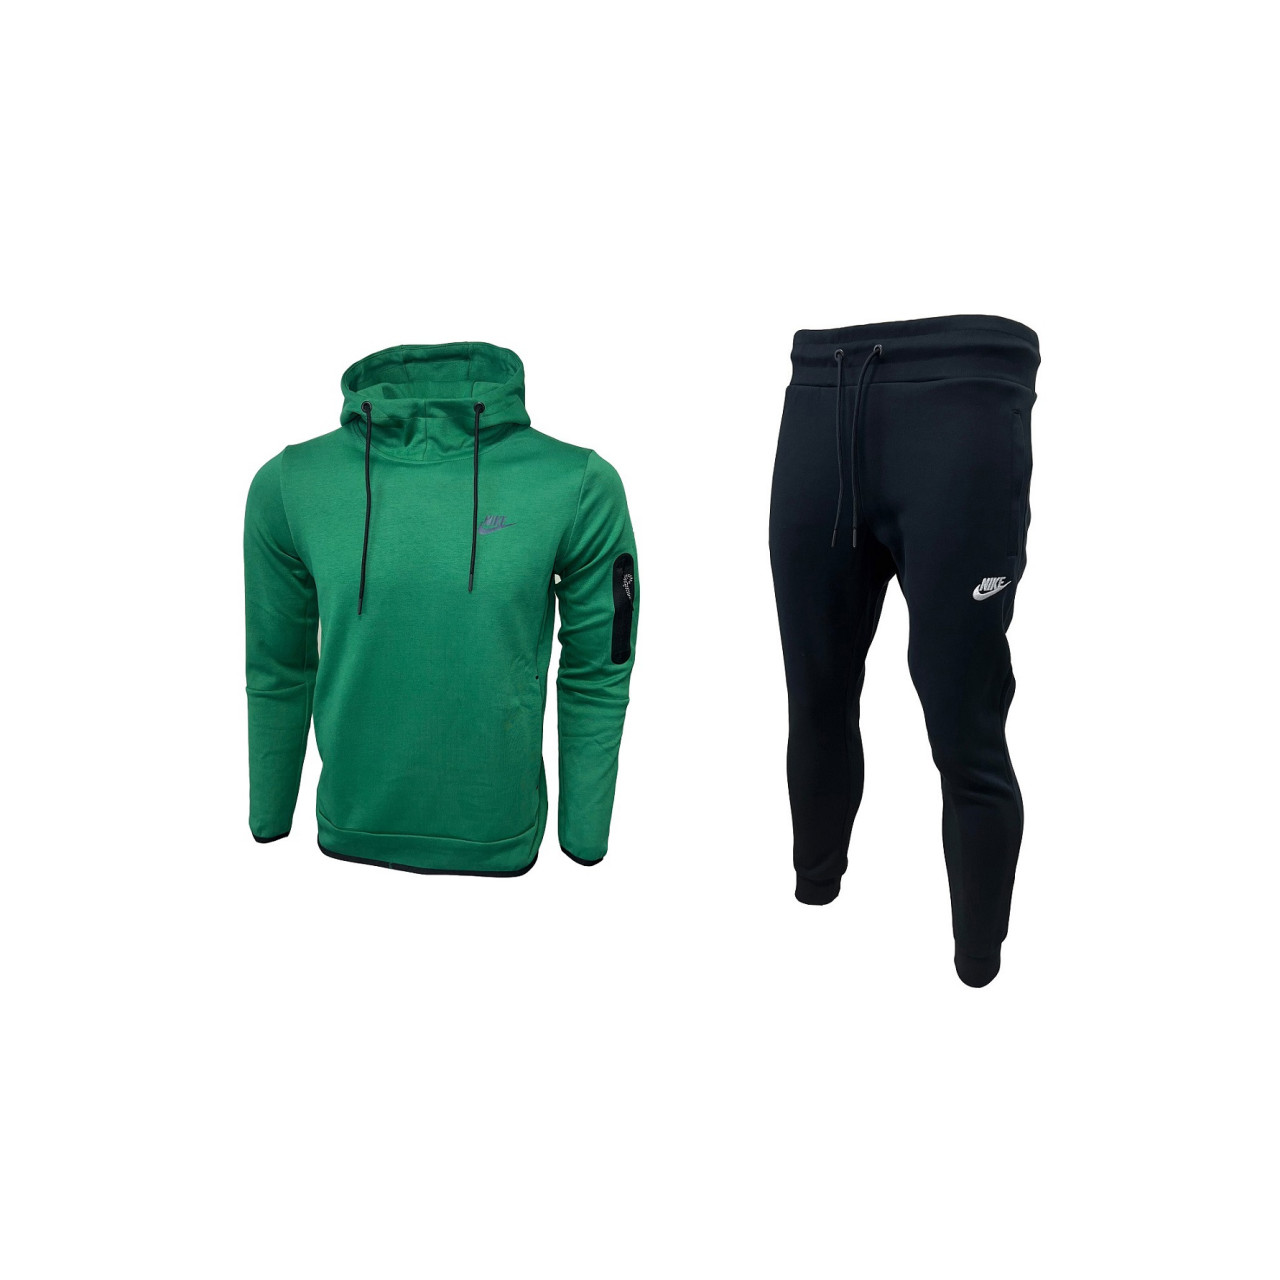  Nike Sweatshirt + Pants Tech Fleece Green Dark Blue New